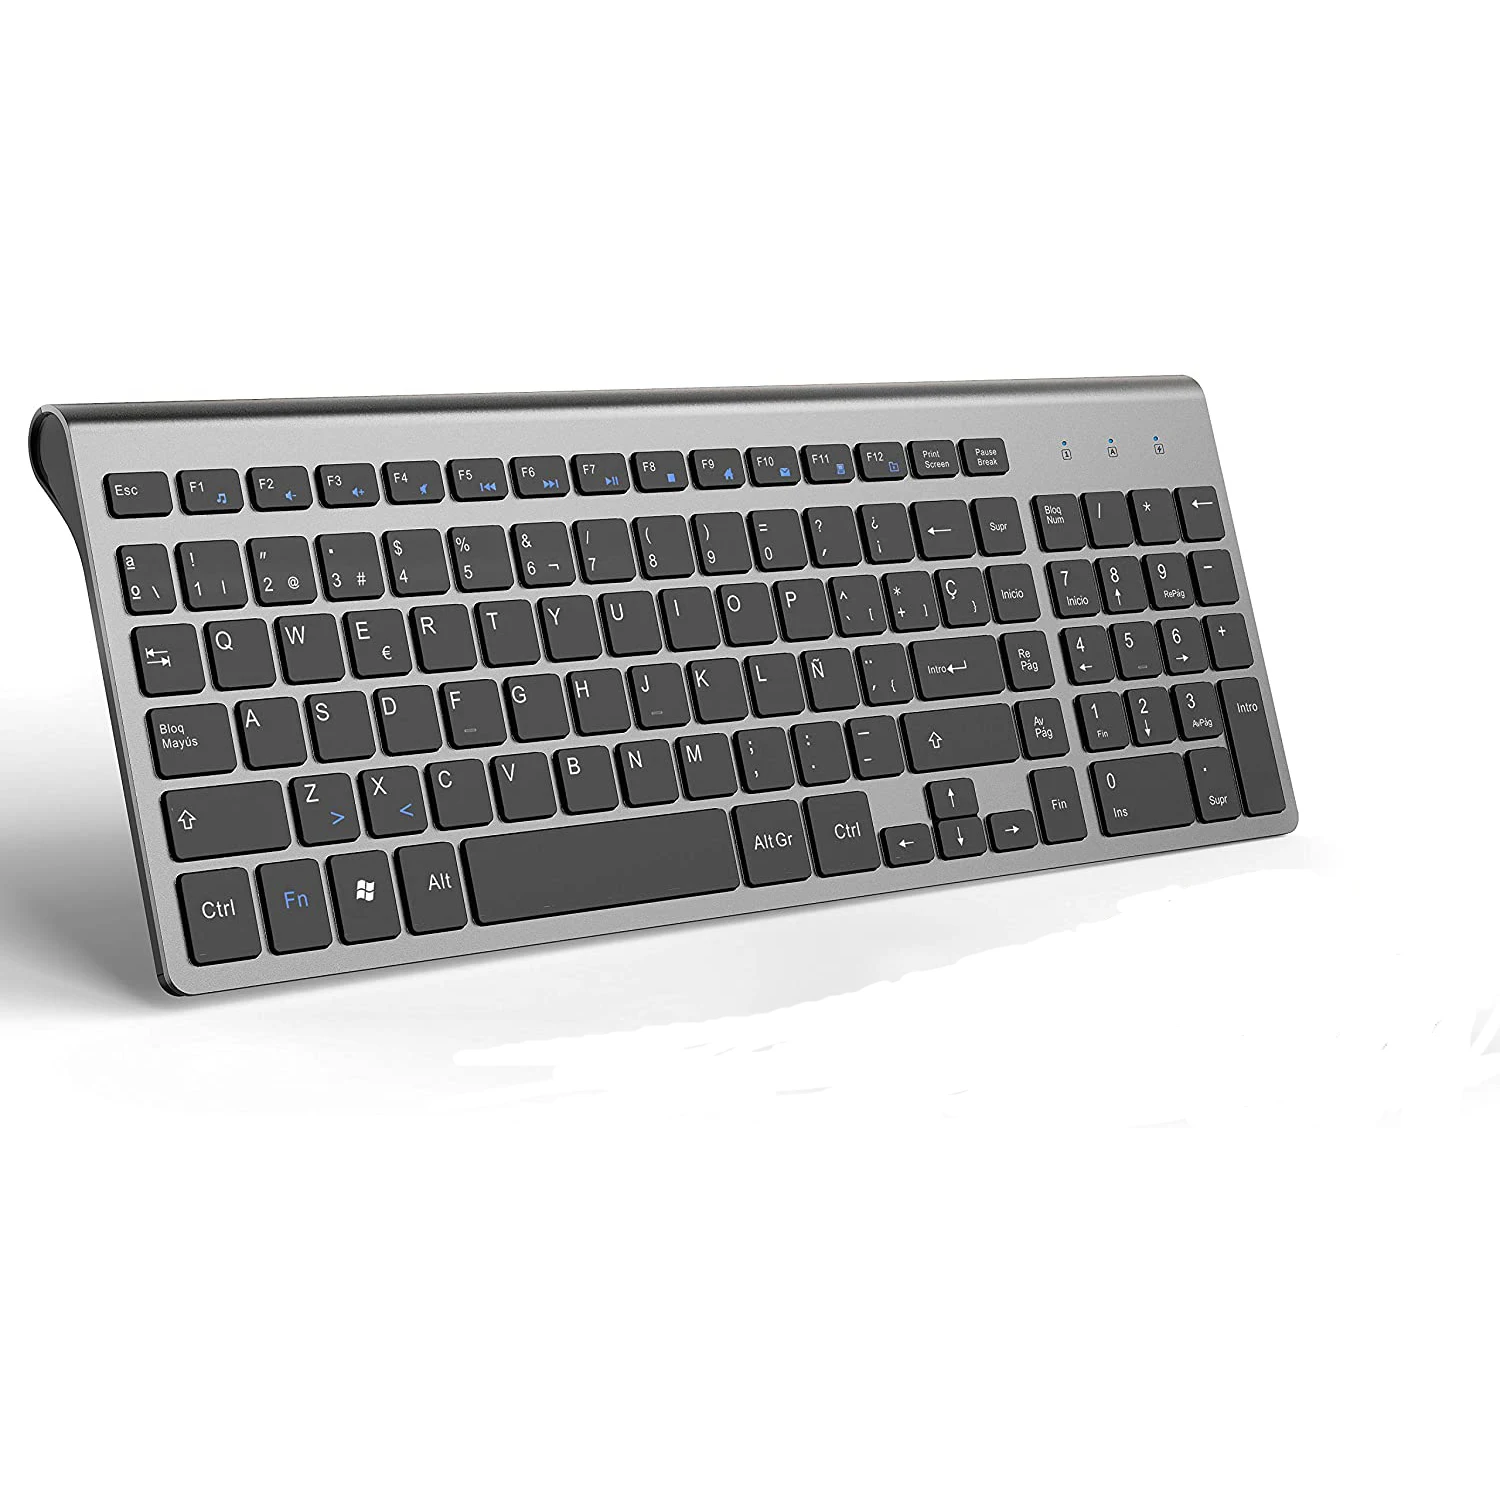 Teclado inalámbrico 2,4G, delgado y compacto, con teclas numéricas, diseño español, adecuado para IMac/Mac, MacBook, portátil (negro y gris)